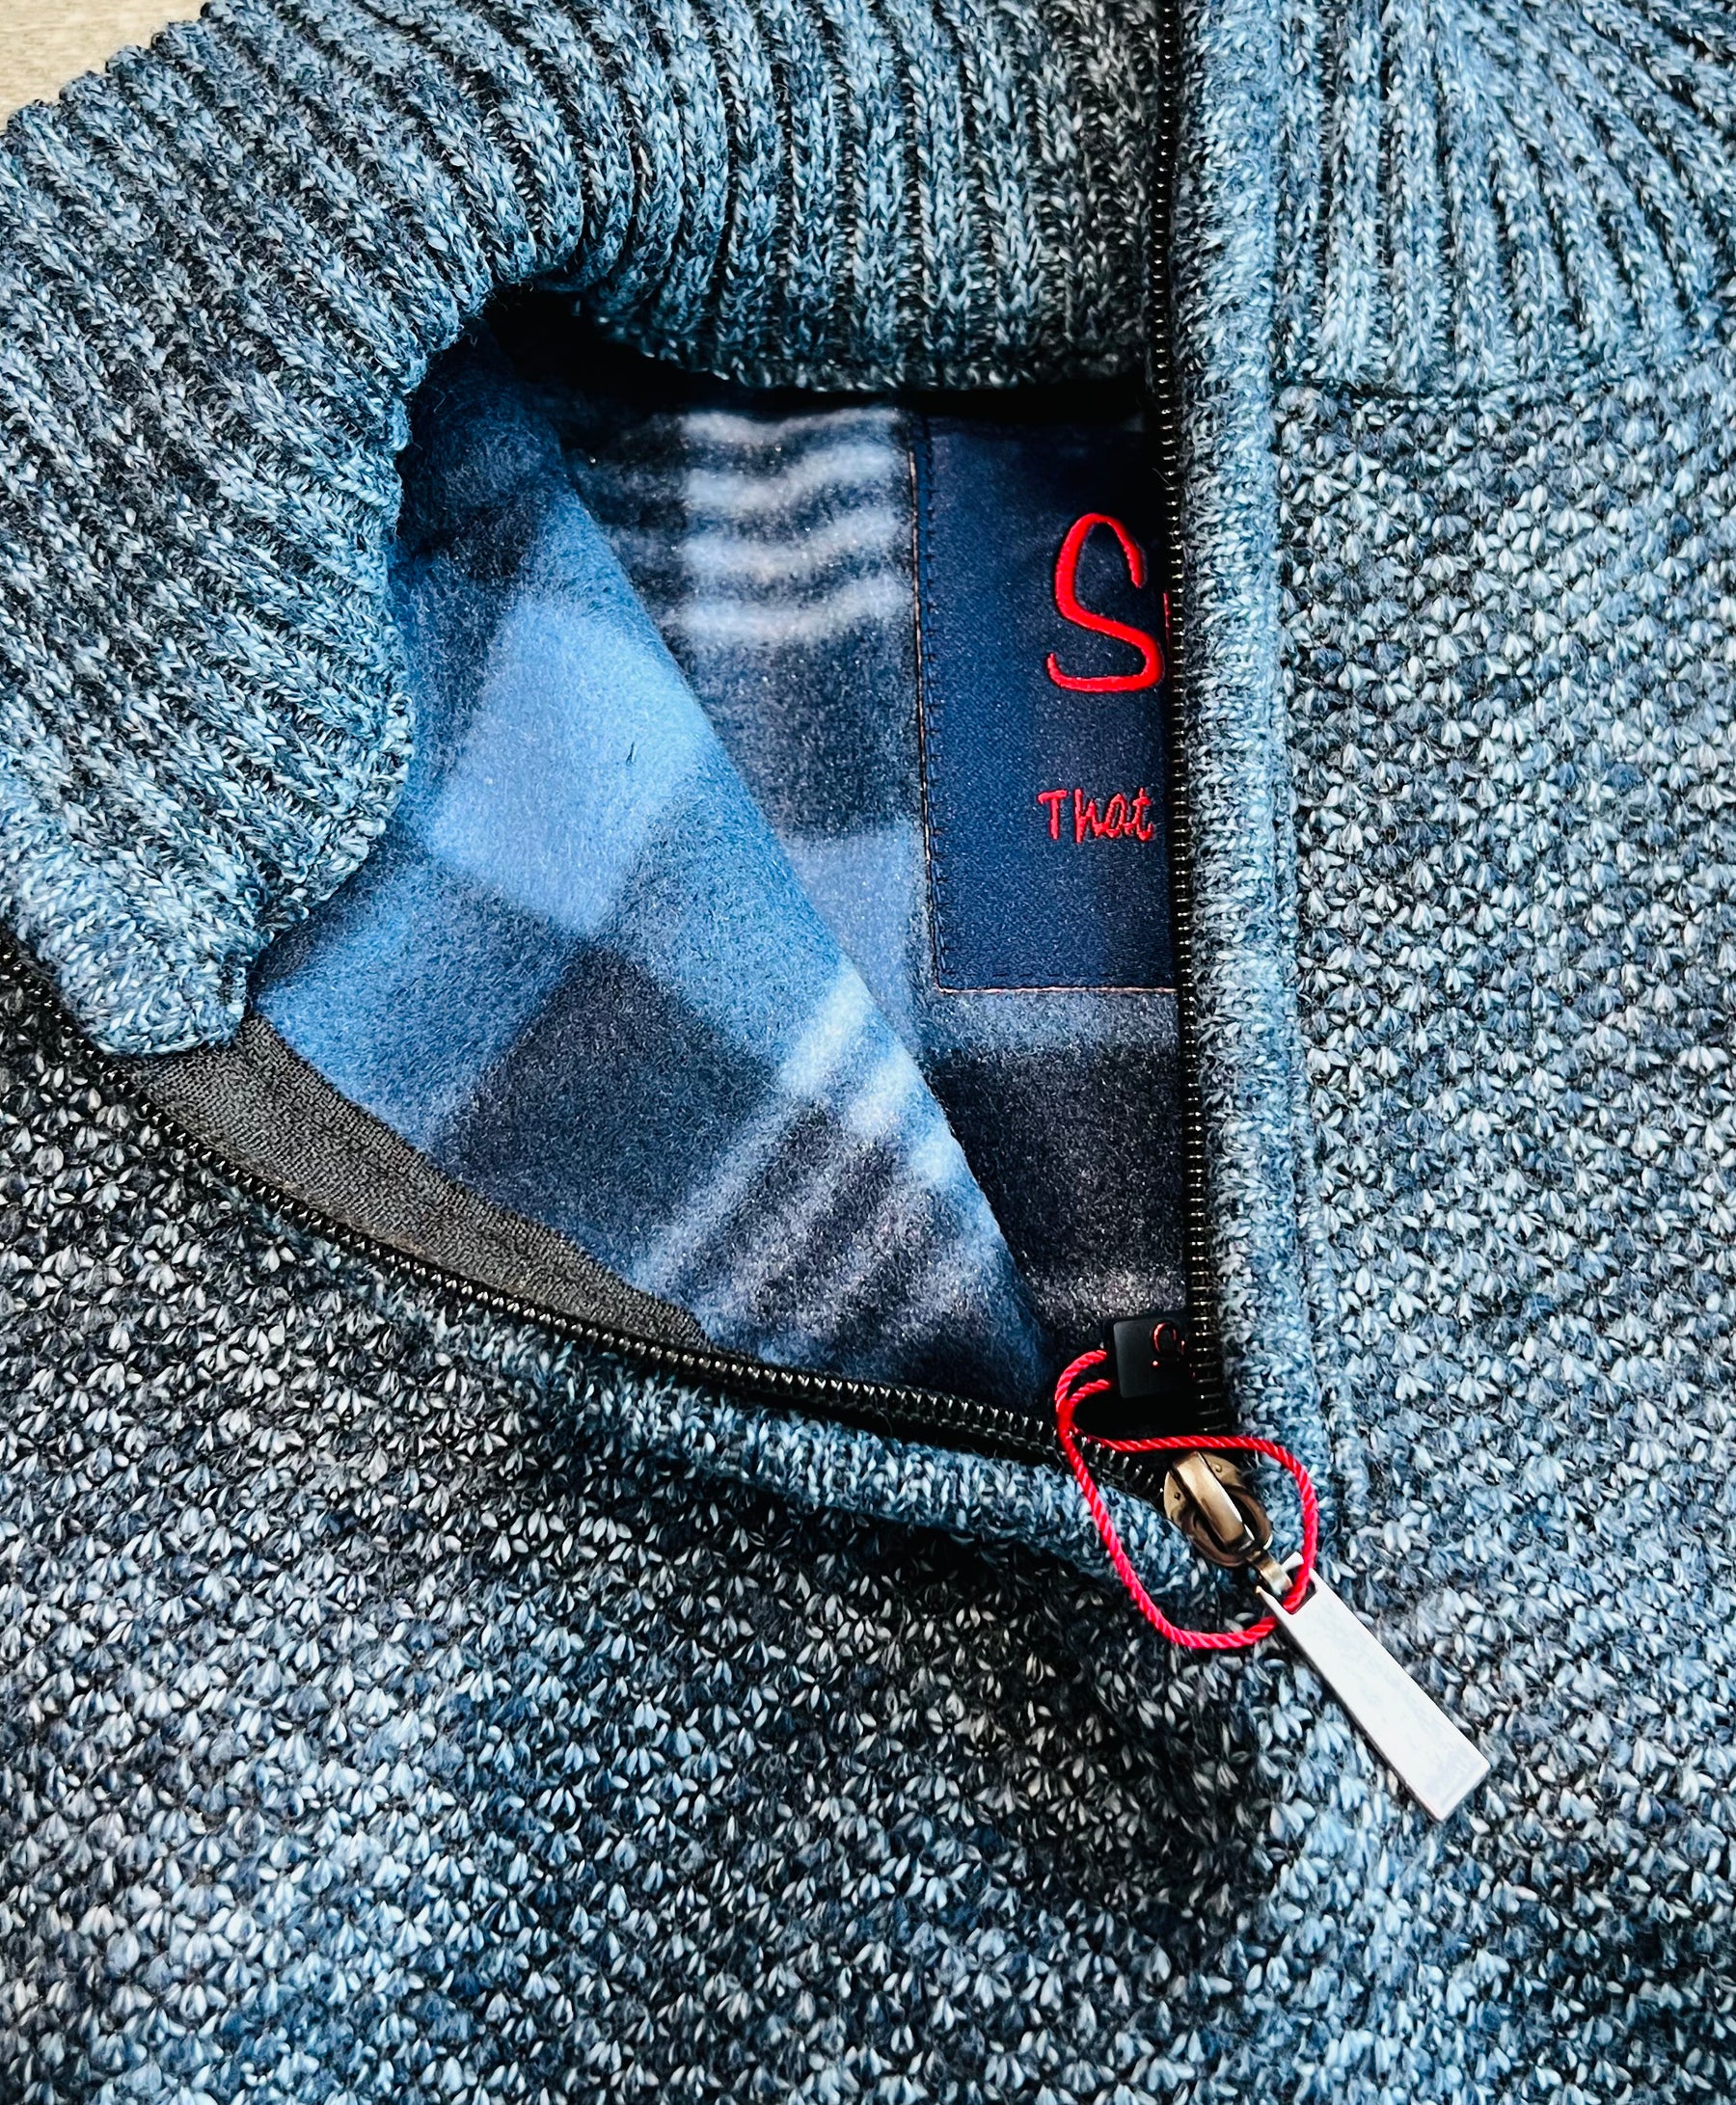 Chamonix Indigo 1/4 Zip Sweater